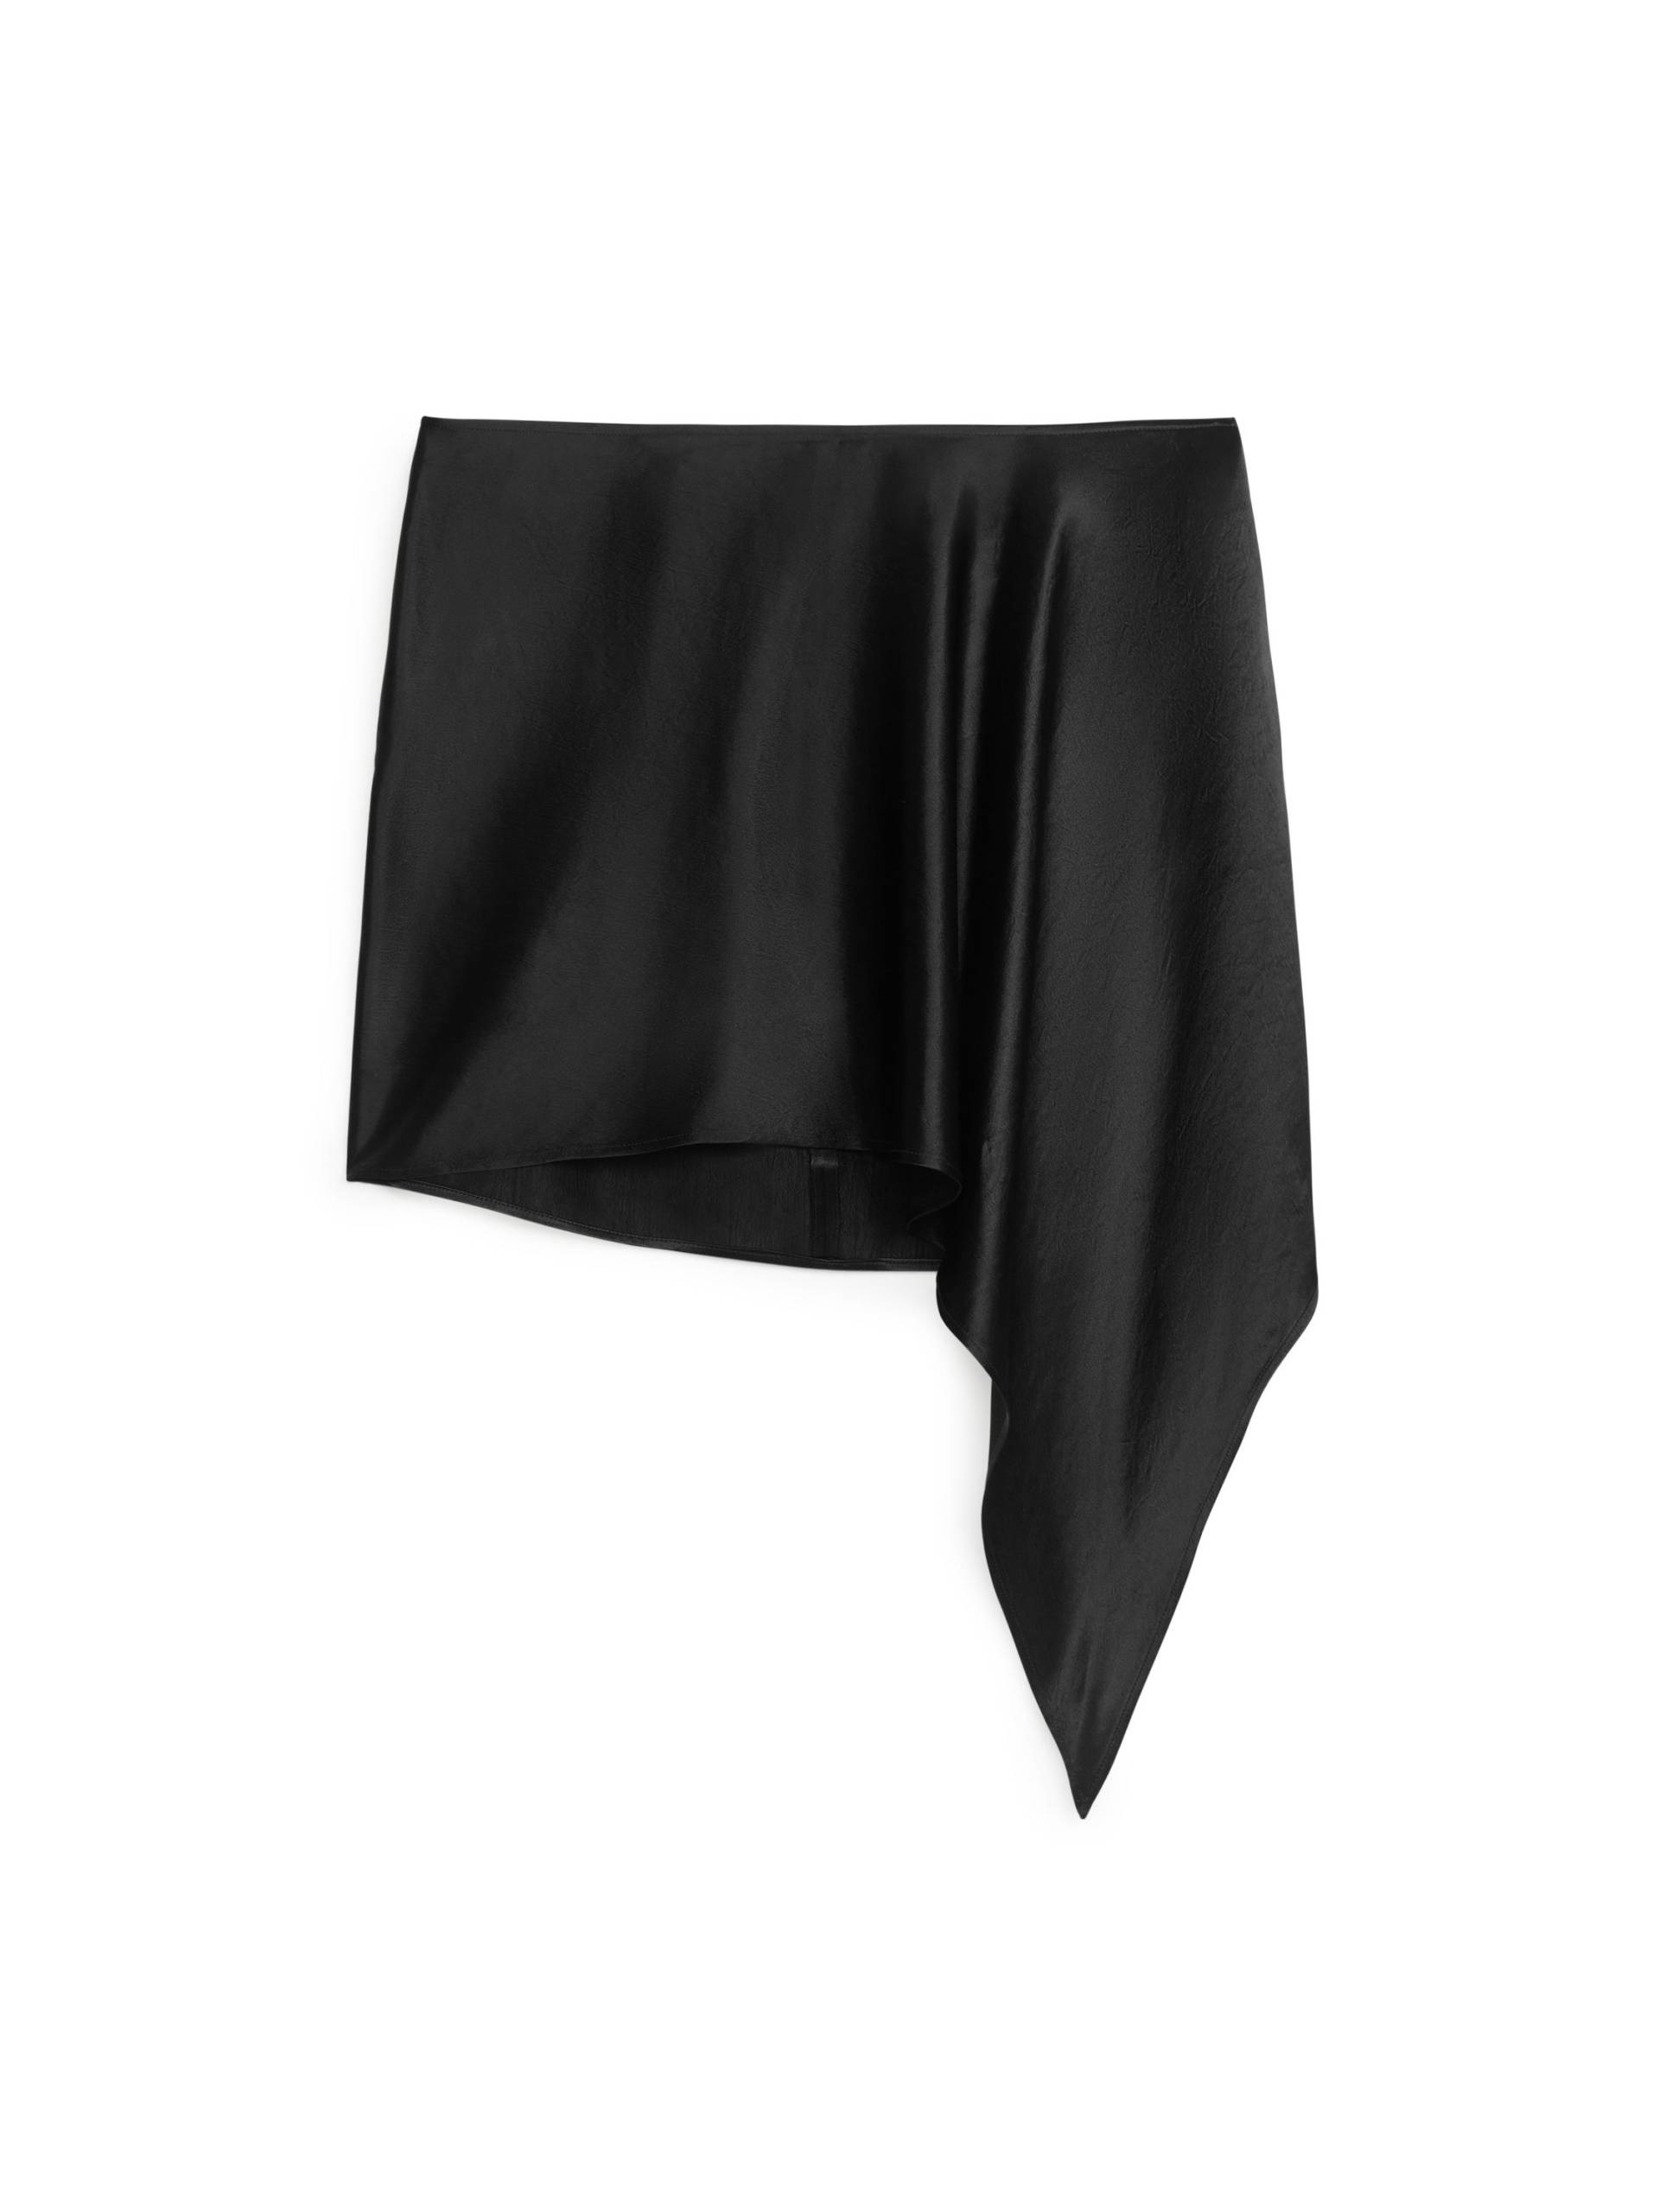 Arket Minirock aus Satin Dunkelgrau, Röcke in Größe 40. Farbe: Dark grey von Arket